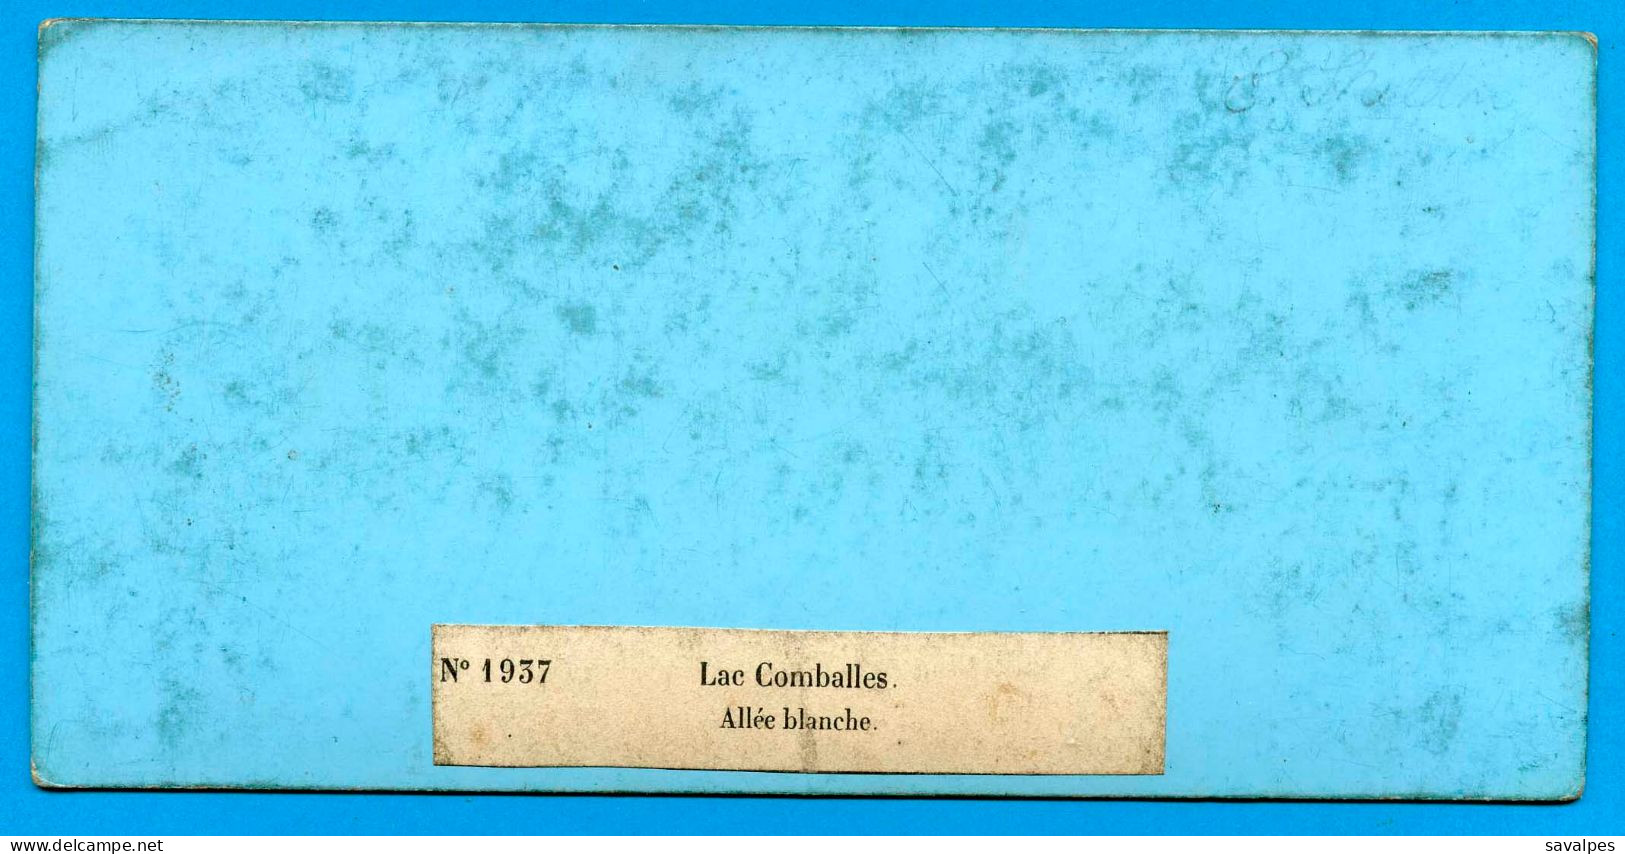 Italie Courmayeur * Lac Comballes Allée Blanche* Photo Stéréoscopique Braun Vers 1865 - Stereo-Photographie